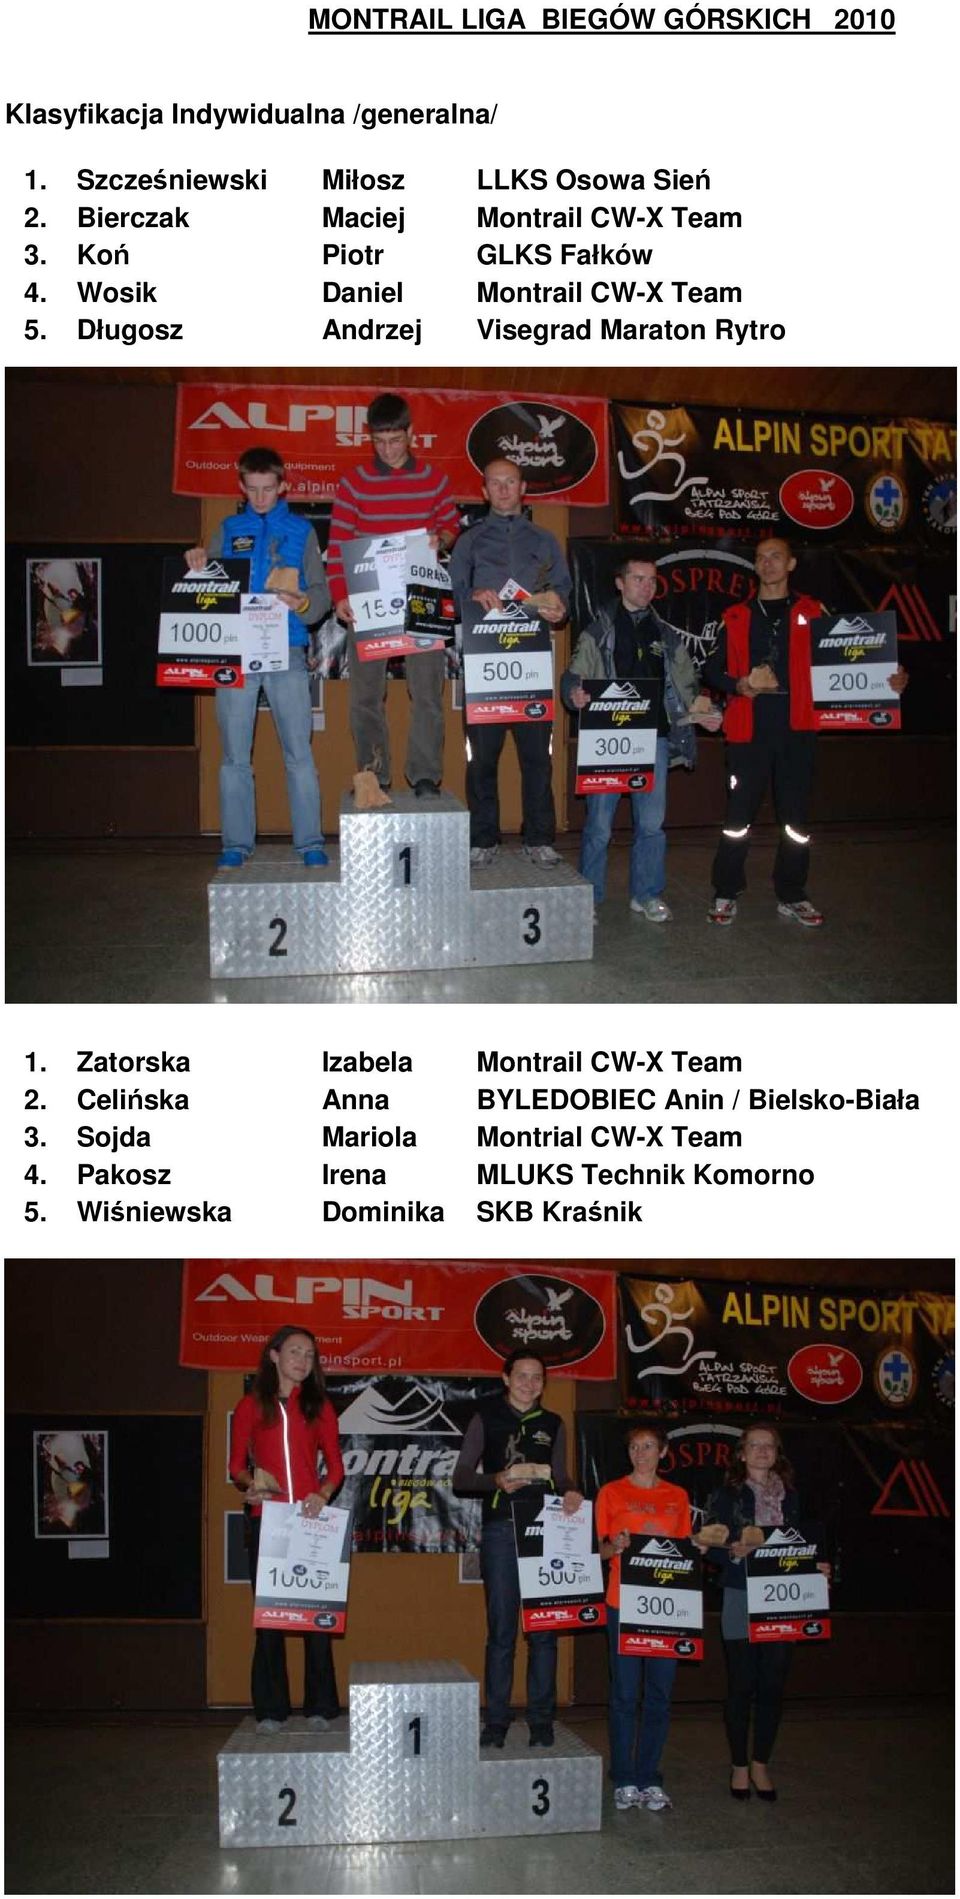 Wosik Daniel Montrail CW-X Team 5. Długosz Andrzej Visegrad Maraton Rytro 1.